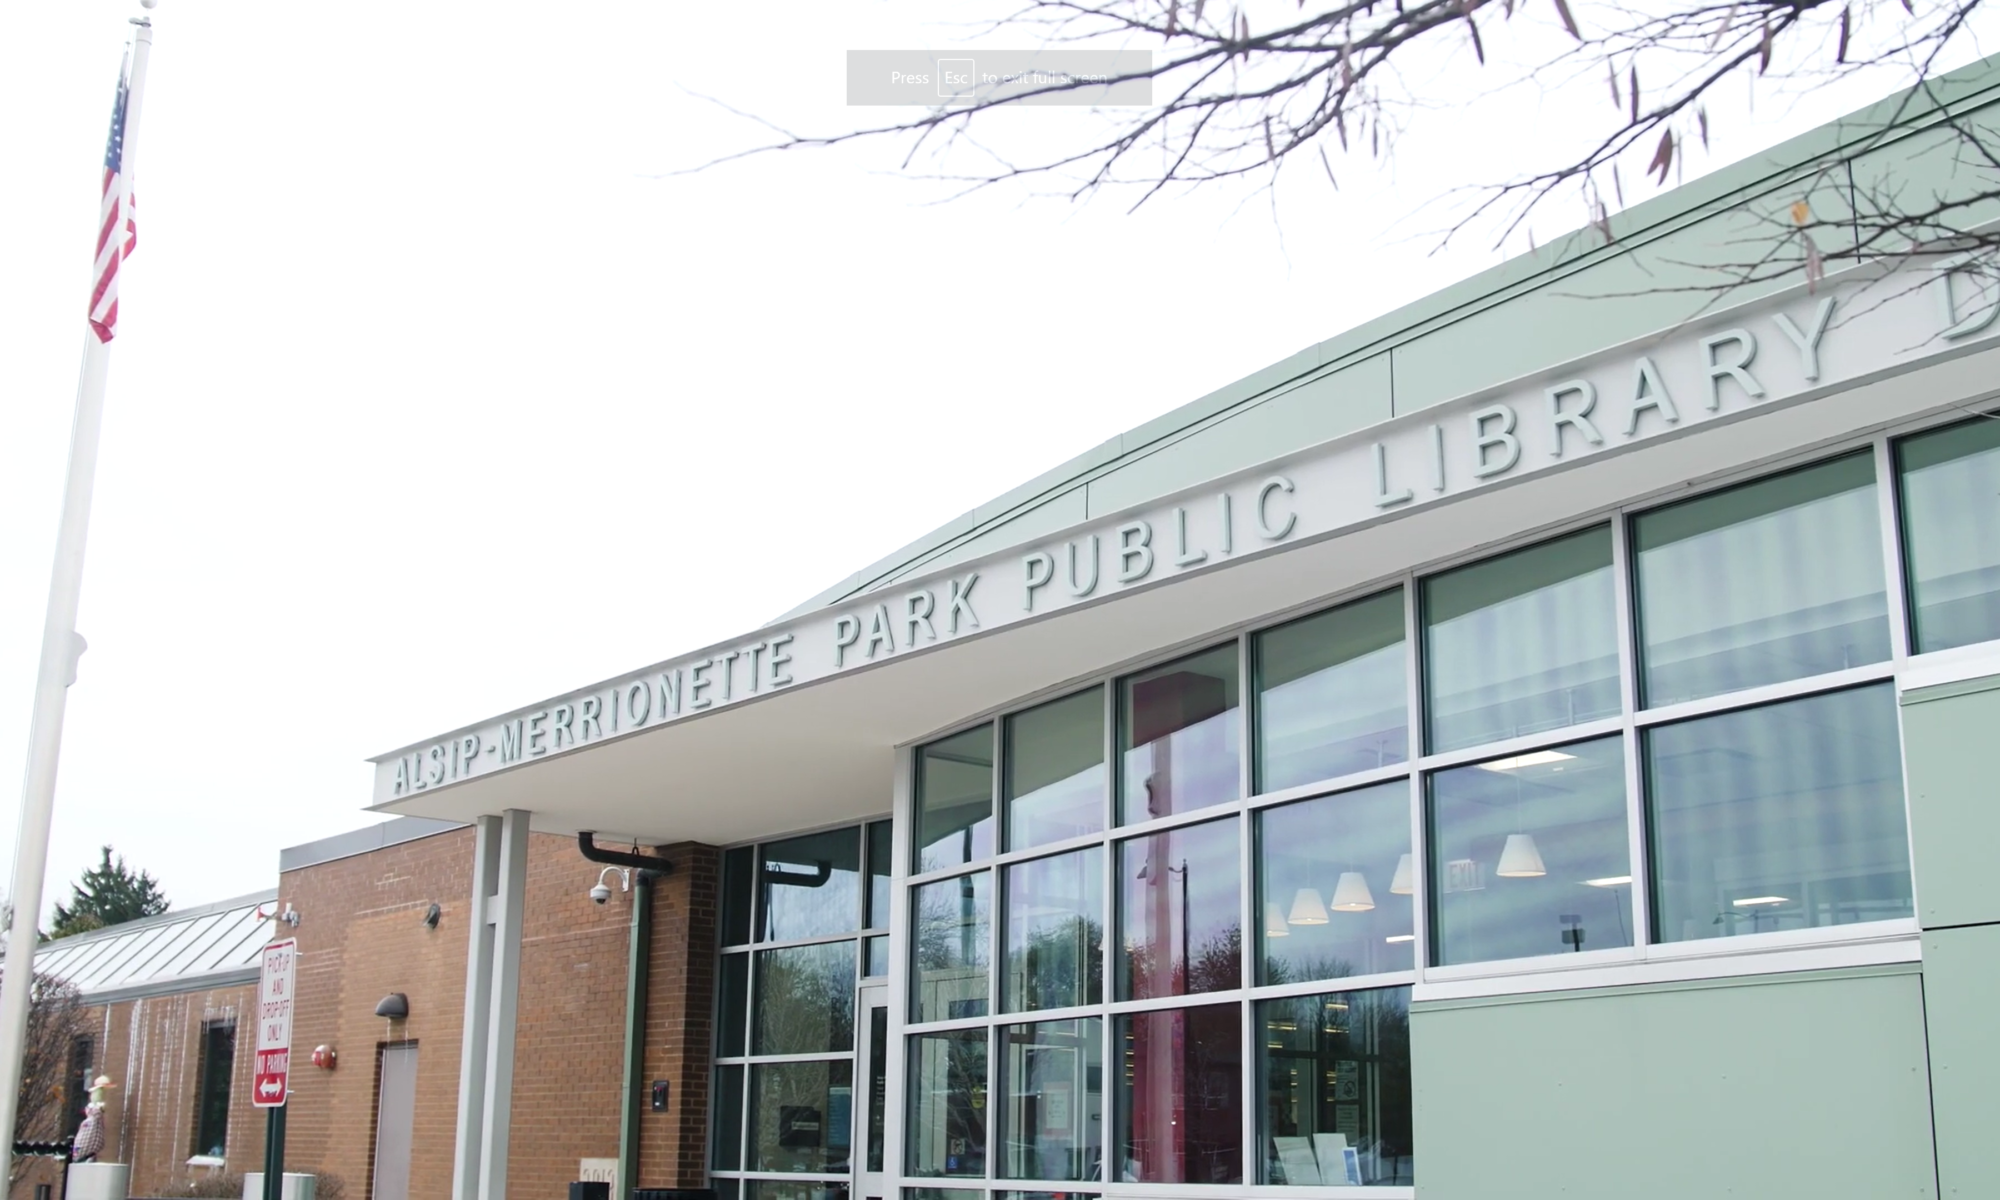 Alsip-Merrionette Park Public Library